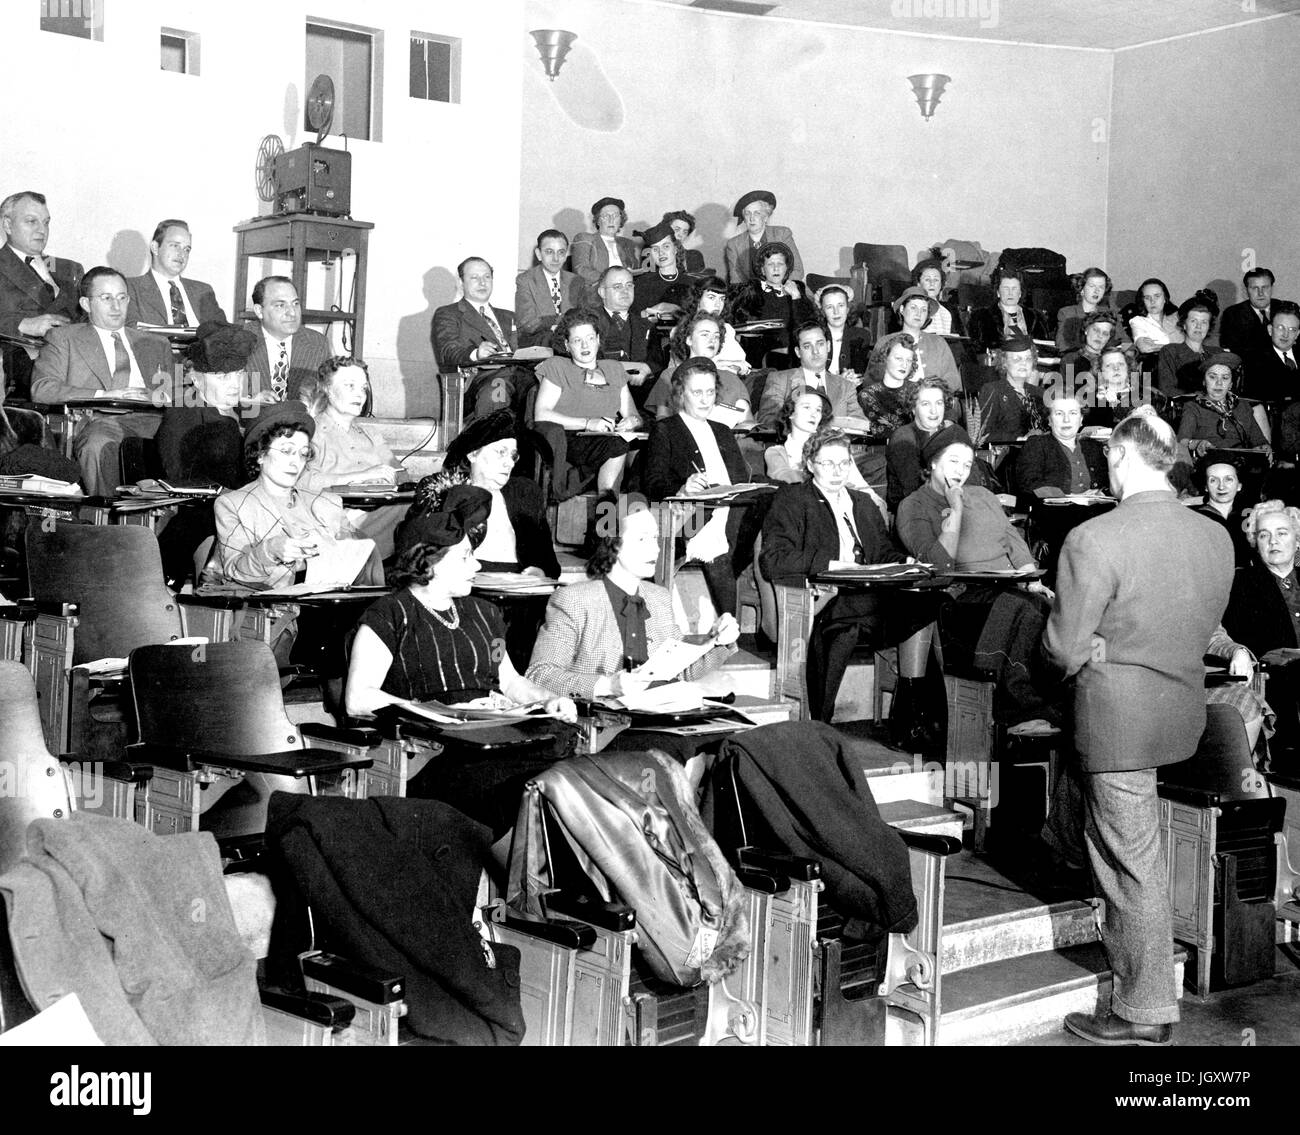 Les étudiants du collège soirée JHU s'asseoir dans une salle de conférences en prenant des notes que leur professeur se trouve dans les couloirs des conférences, 1930. Banque D'Images